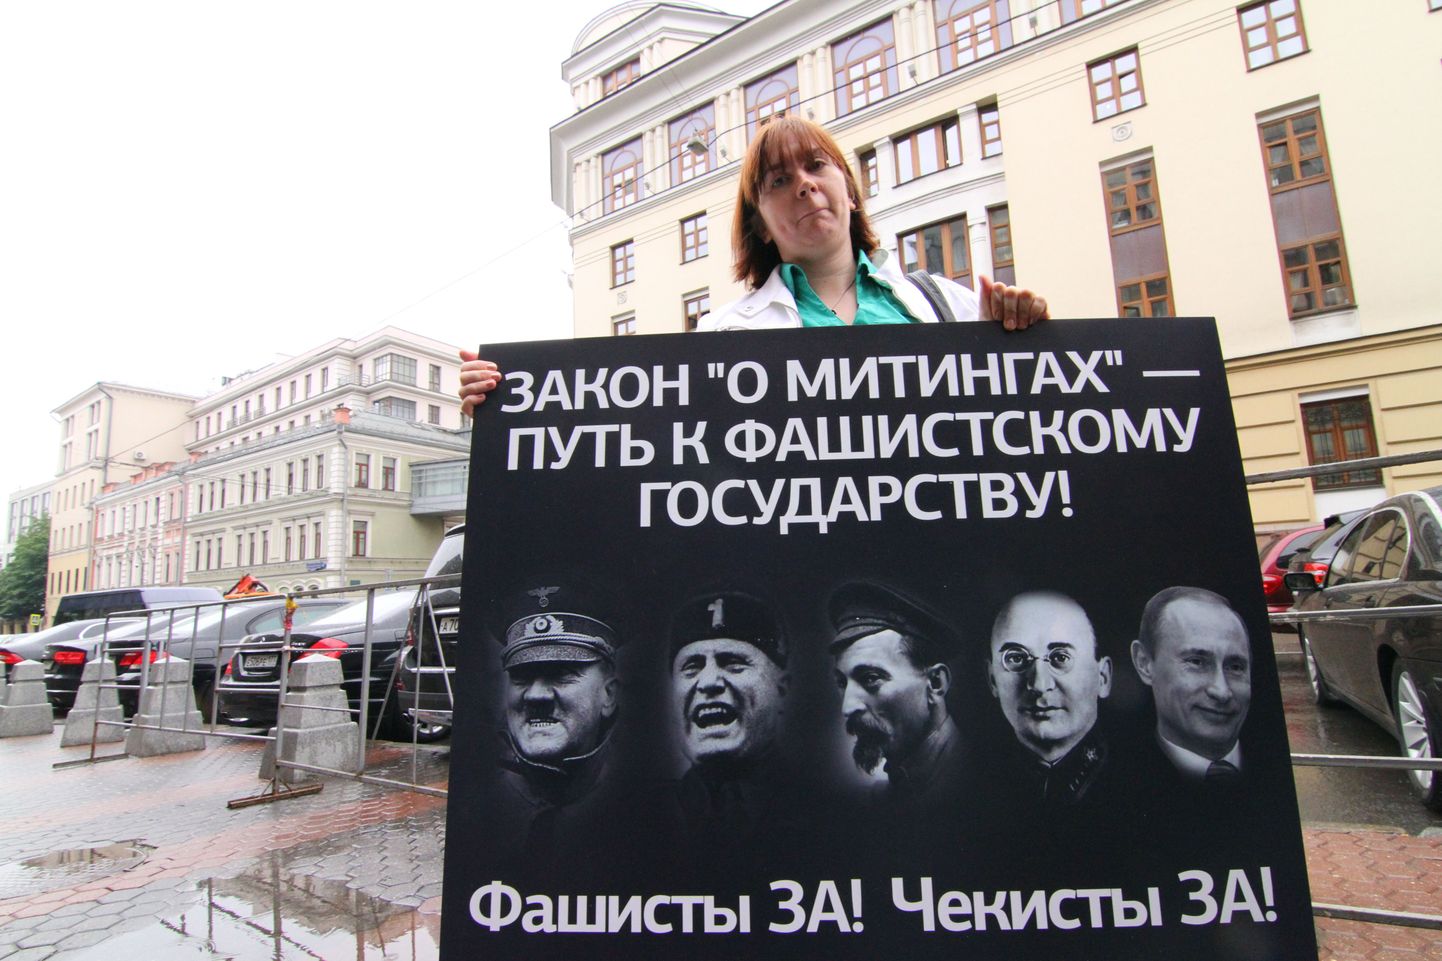 Kiri naise käes oleval plakatil teatab, et seadus miitingutest on tee fašistliku riigini. Selle poolt on fašistid ja tšekistid. Piltidel on (vasakult paremale): Adolf Hitler, Benito Mussolini, Felix Dzeržinski, Lavrenti Beria ja Vladimir Putin.